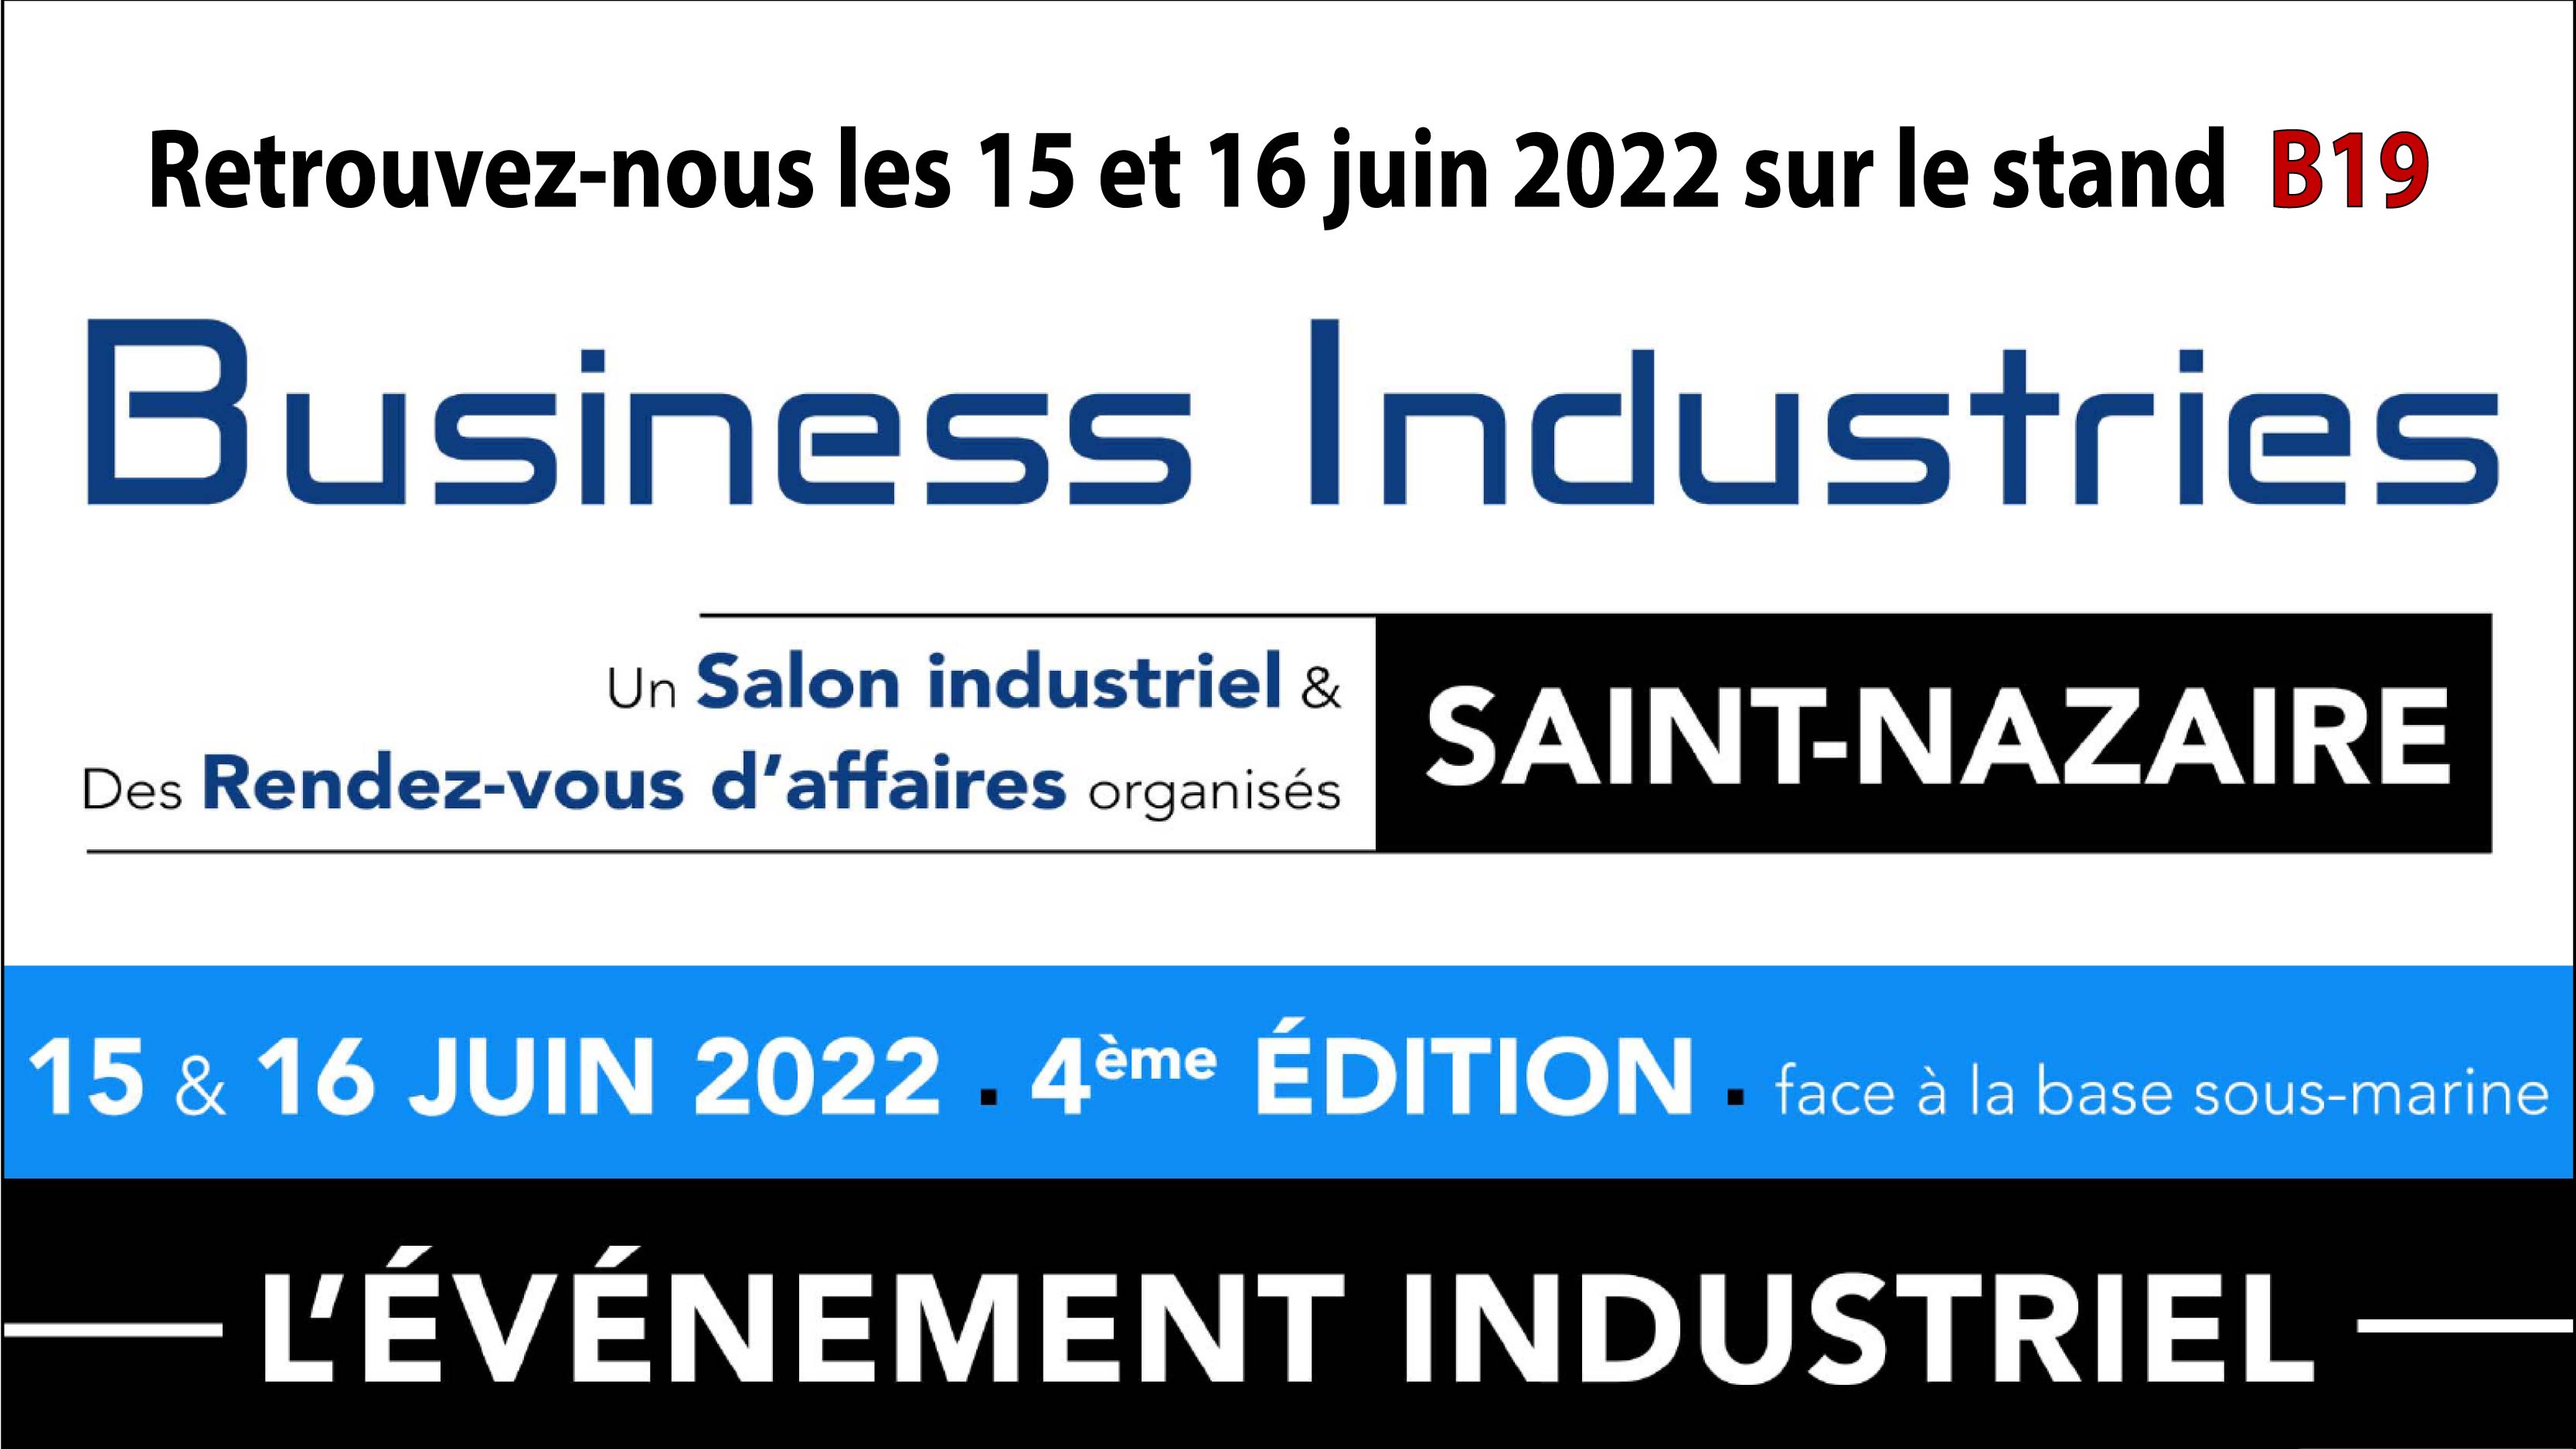 Business Industries Saint-Nazaire 2022